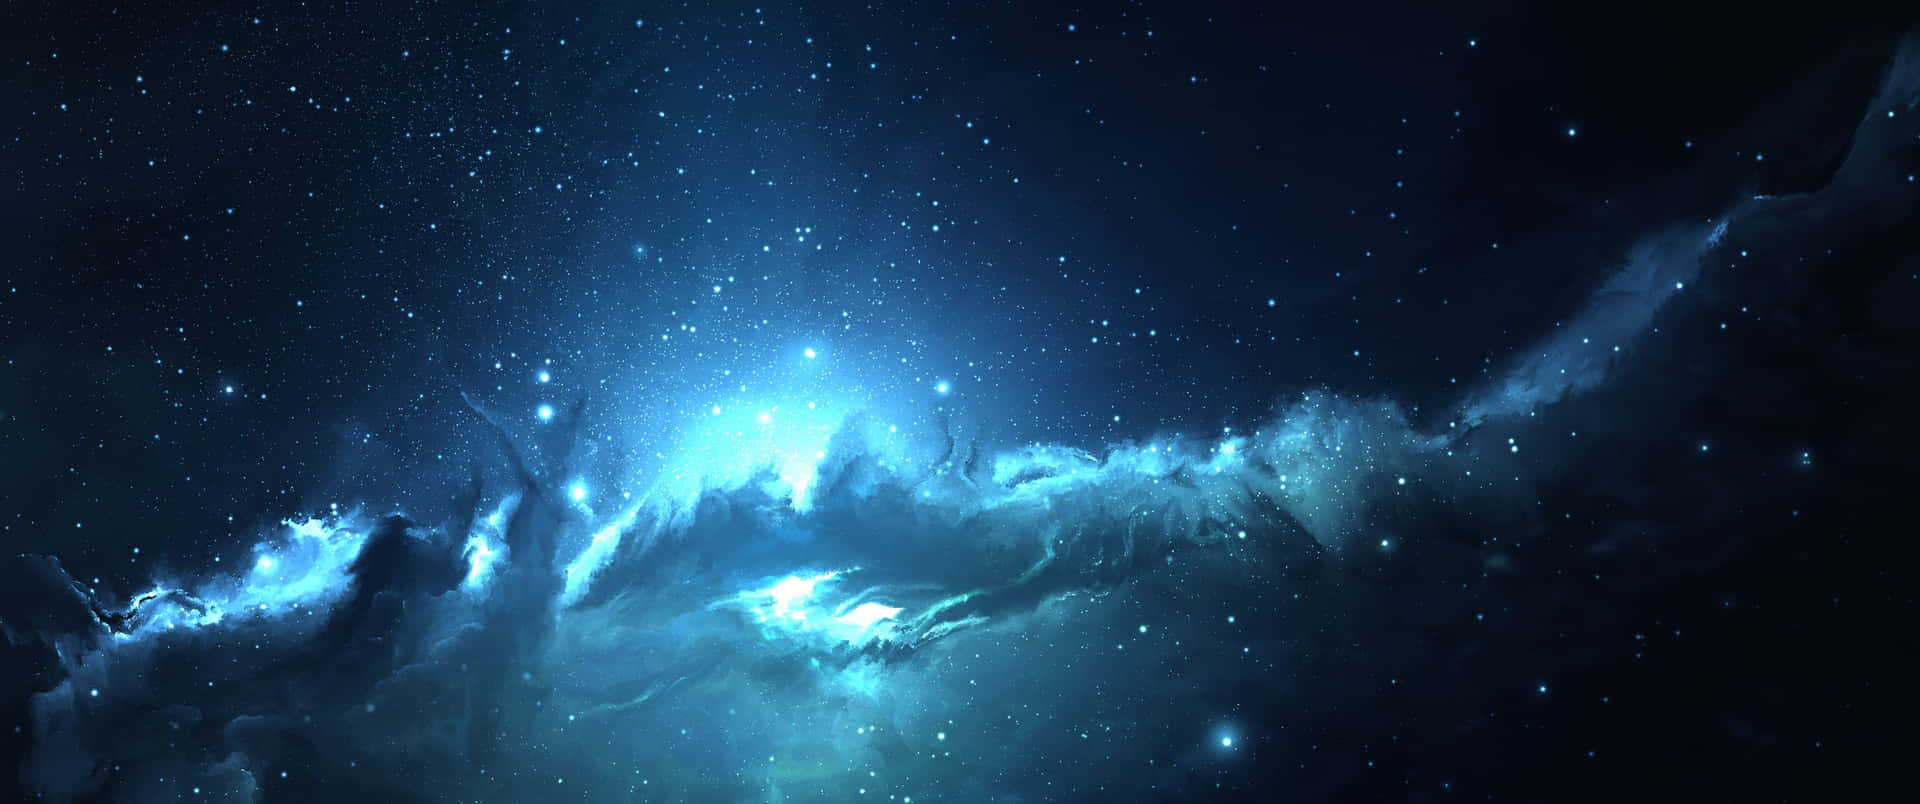 Fjärrangalaxer Under Nattens Himmel. Wallpaper